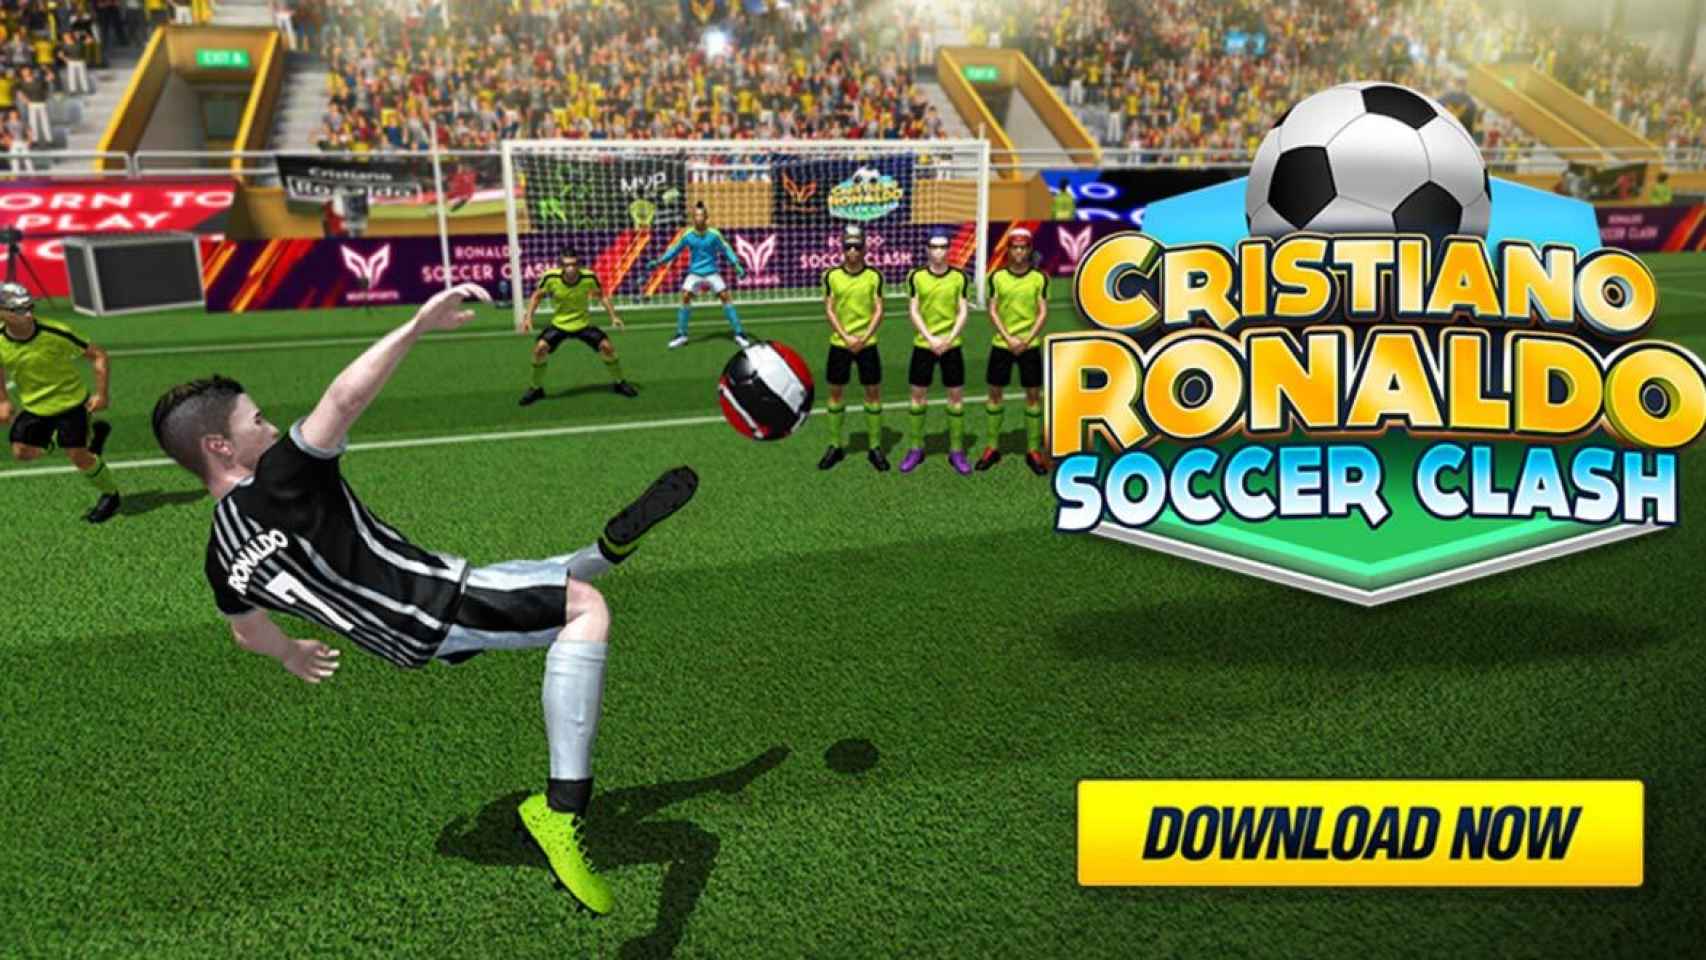 Cristiano Ronaldo y su nuevo juego de fútbol, descárgalo gratis